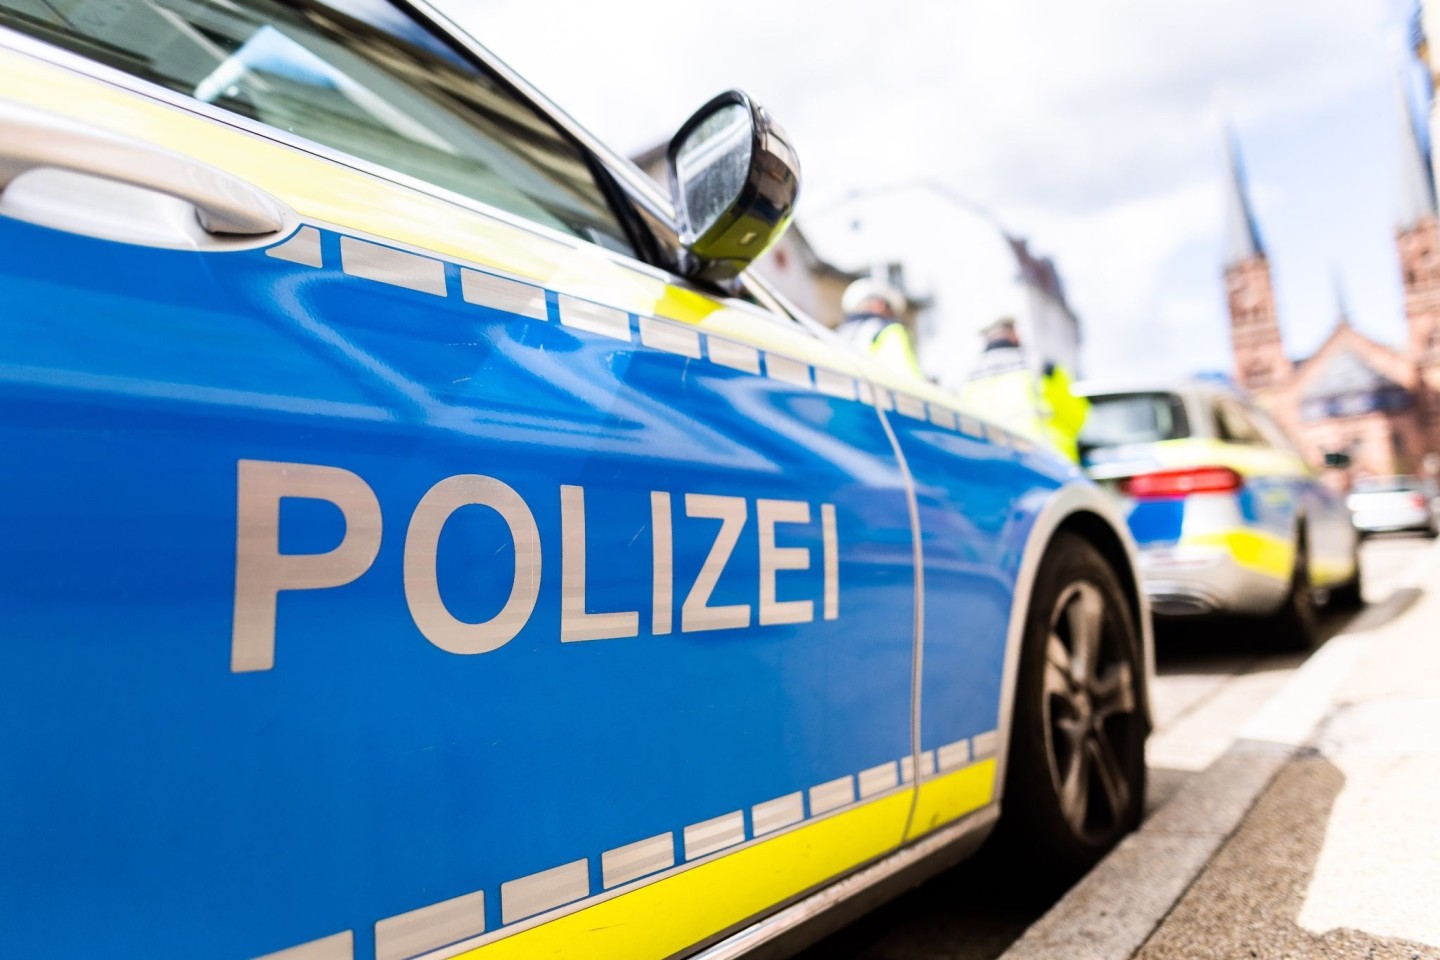 Die Polizei meldet einen getöteten Mann in einem Schrebergarten in Hamburg.